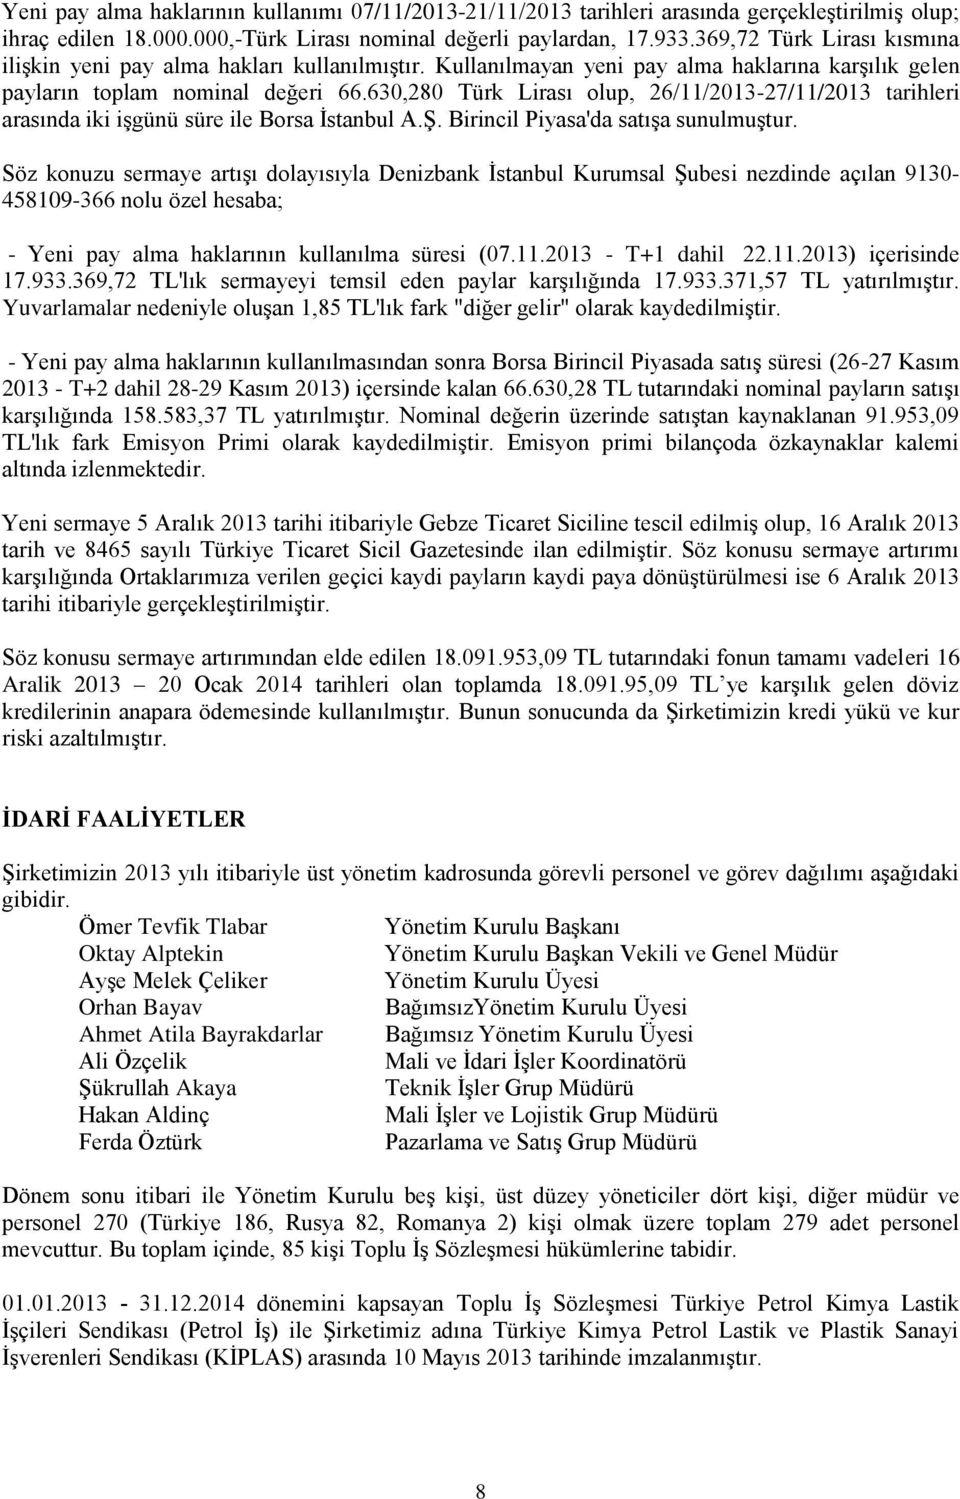 630,280 Türk Lirası olup, 26/11/2013-27/11/2013 tarihleri arasında iki işgünü süre ile Borsa İstanbul A.Ş. Birincil Piyasa'da satışa sunulmuştur.